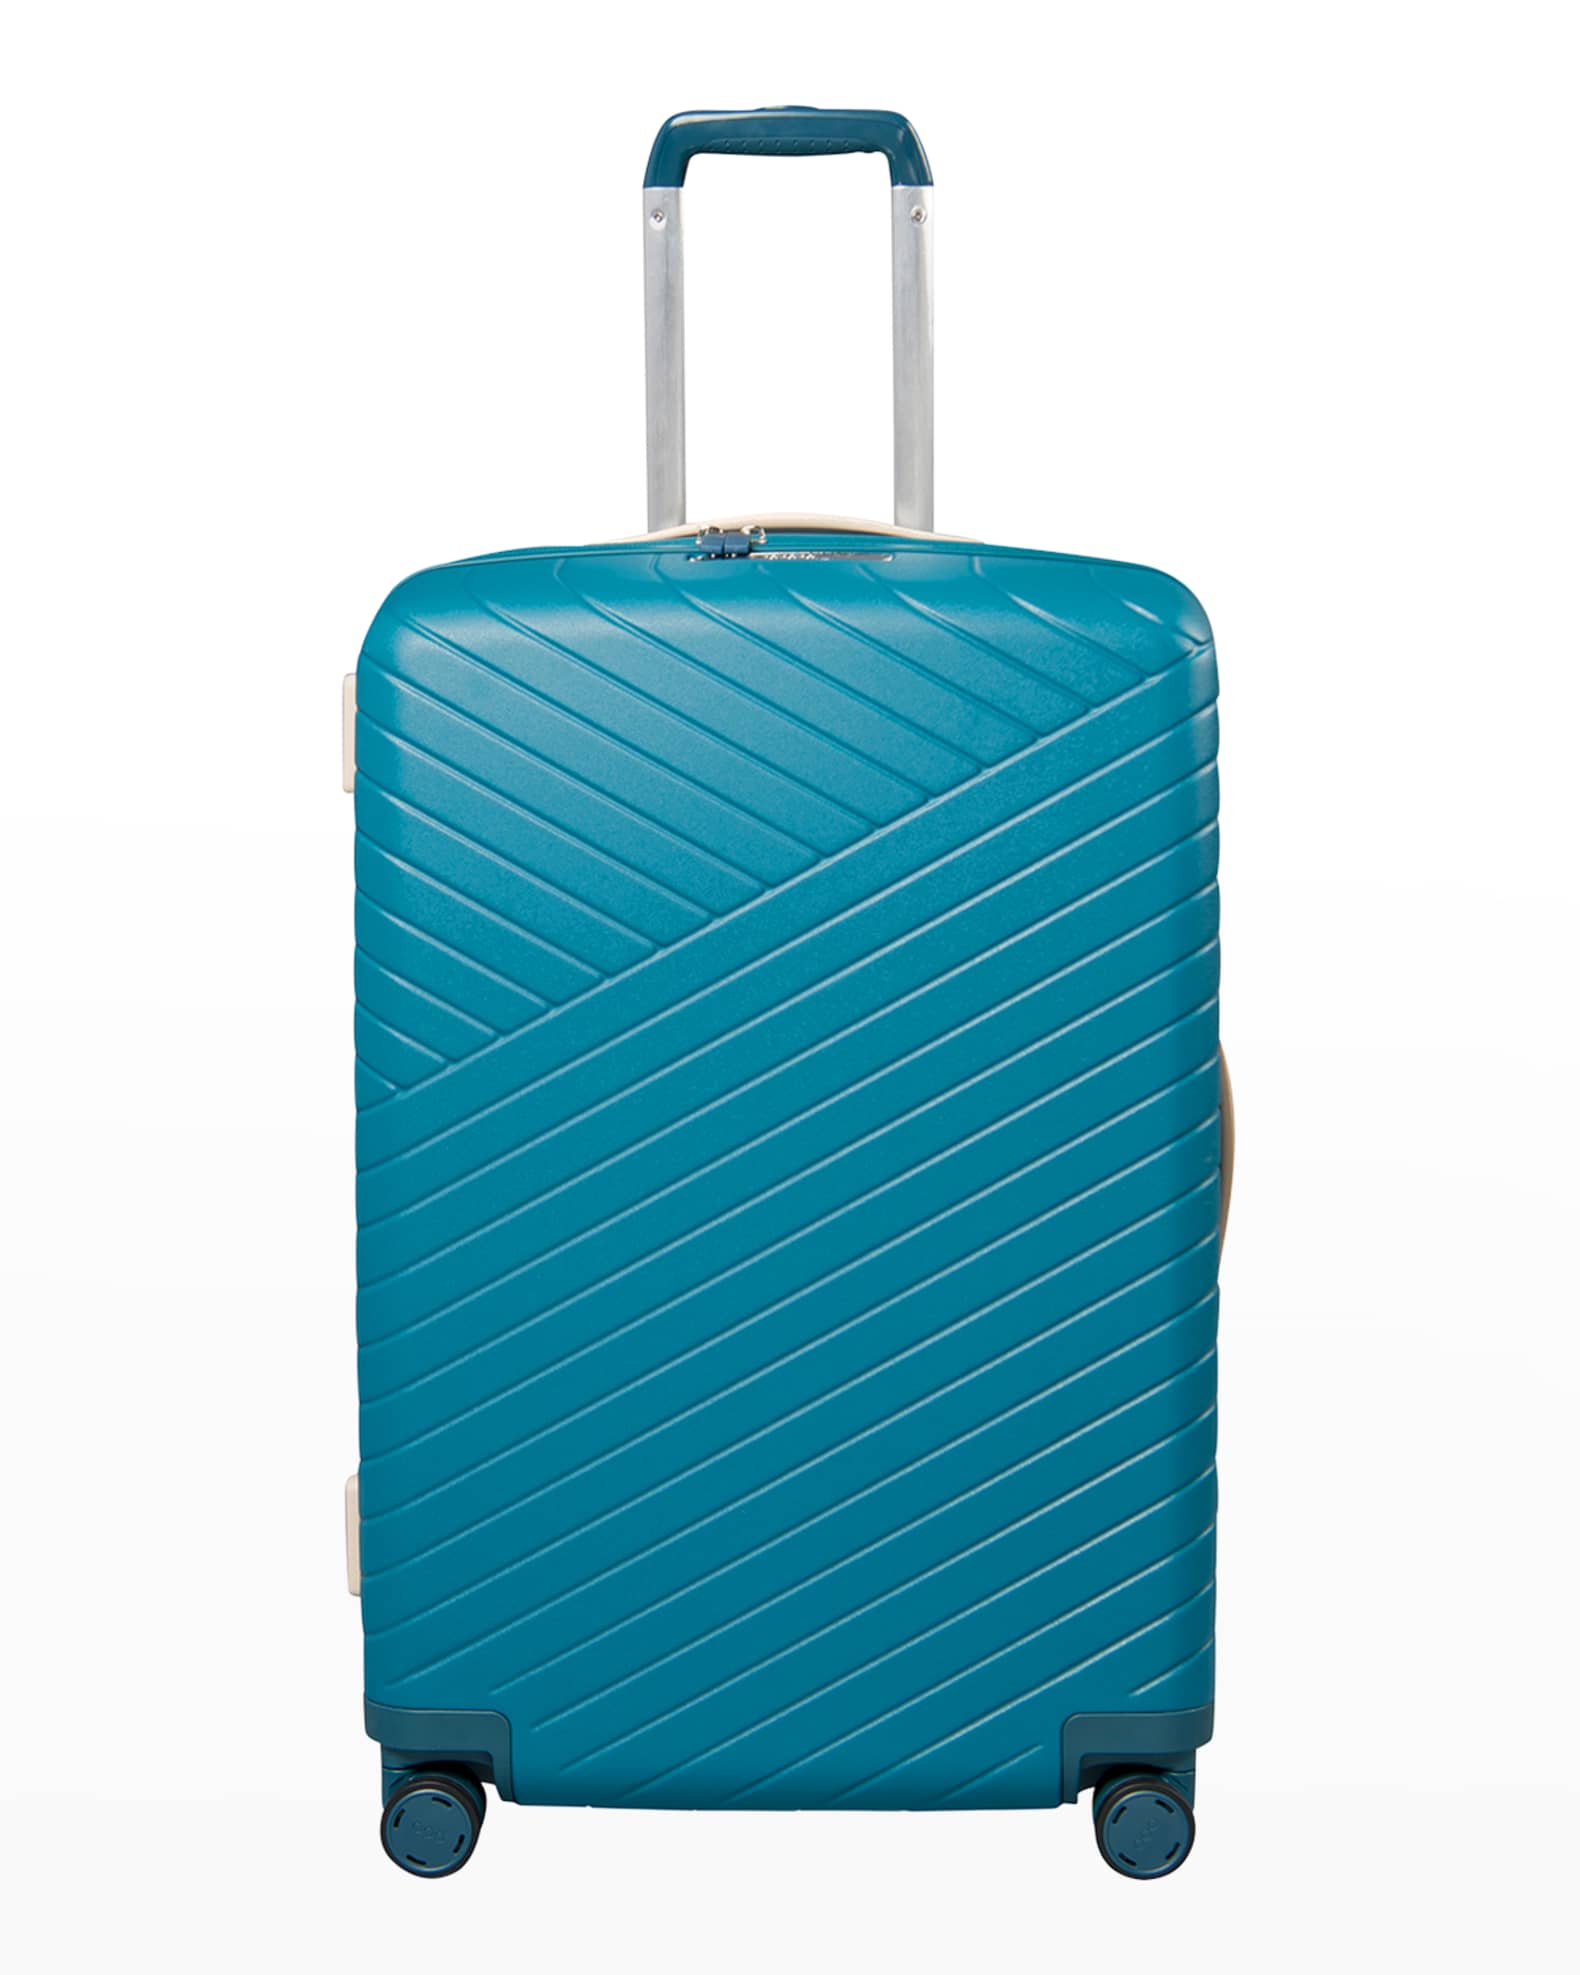 26 Expandable Medium Hardshell Spinner Luggage